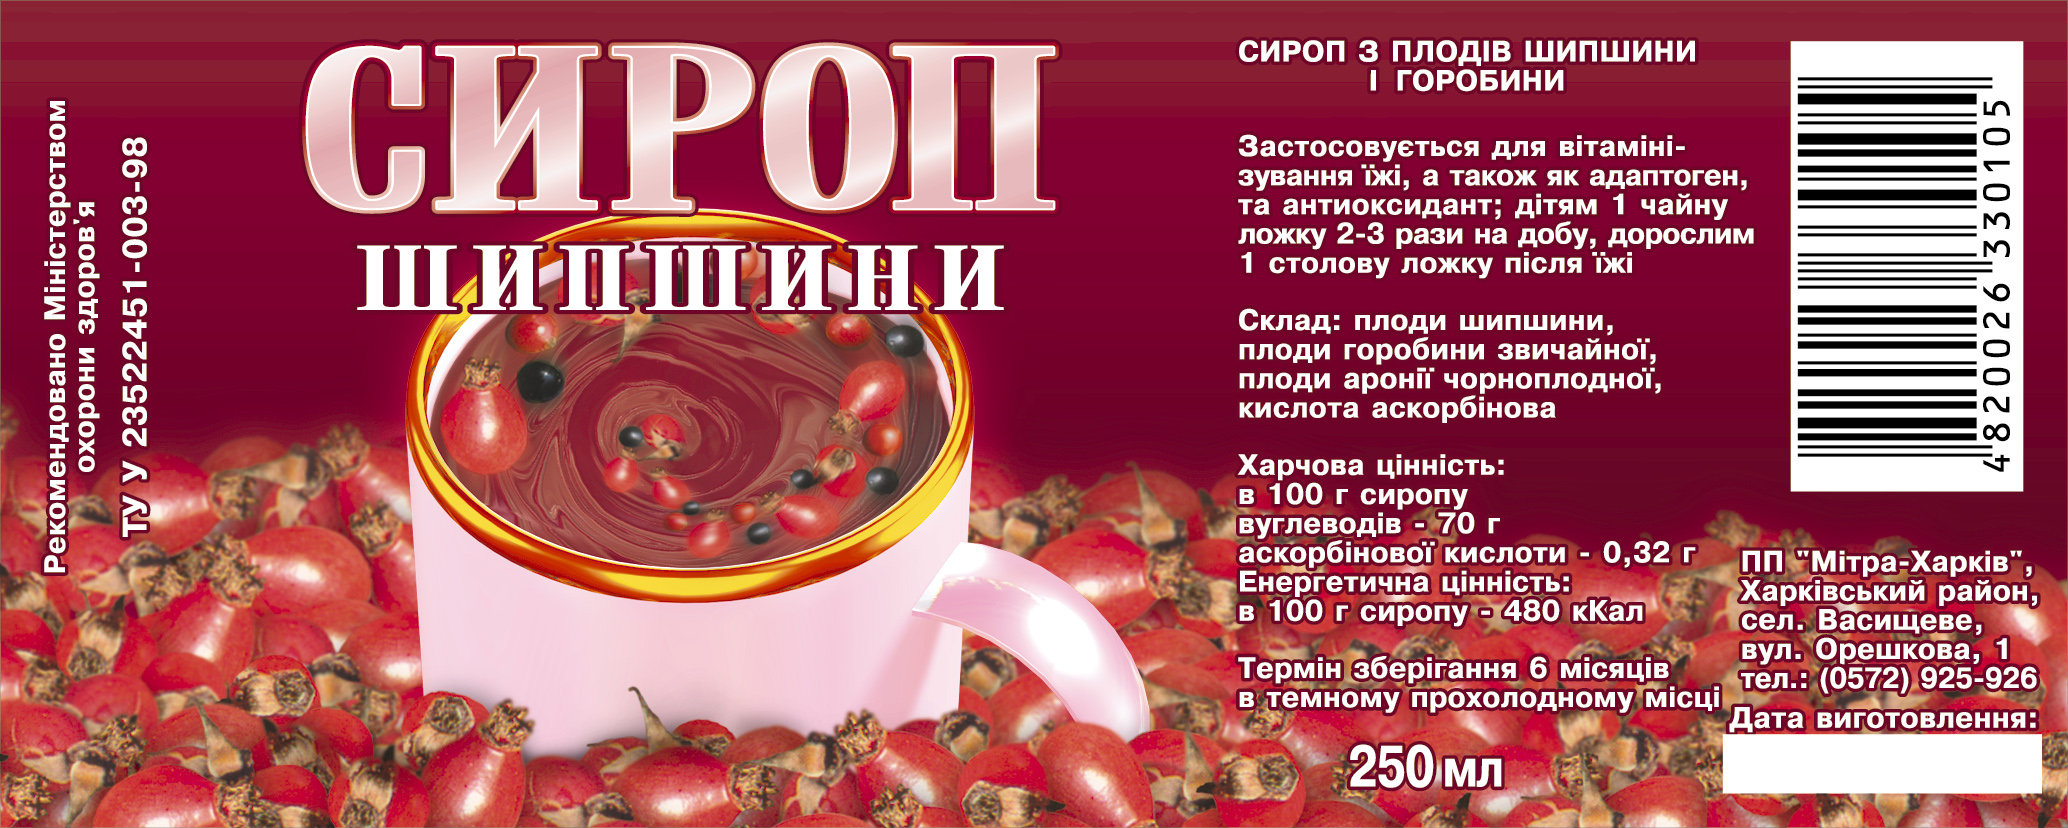 Этикетка для сиропа (Харьков)